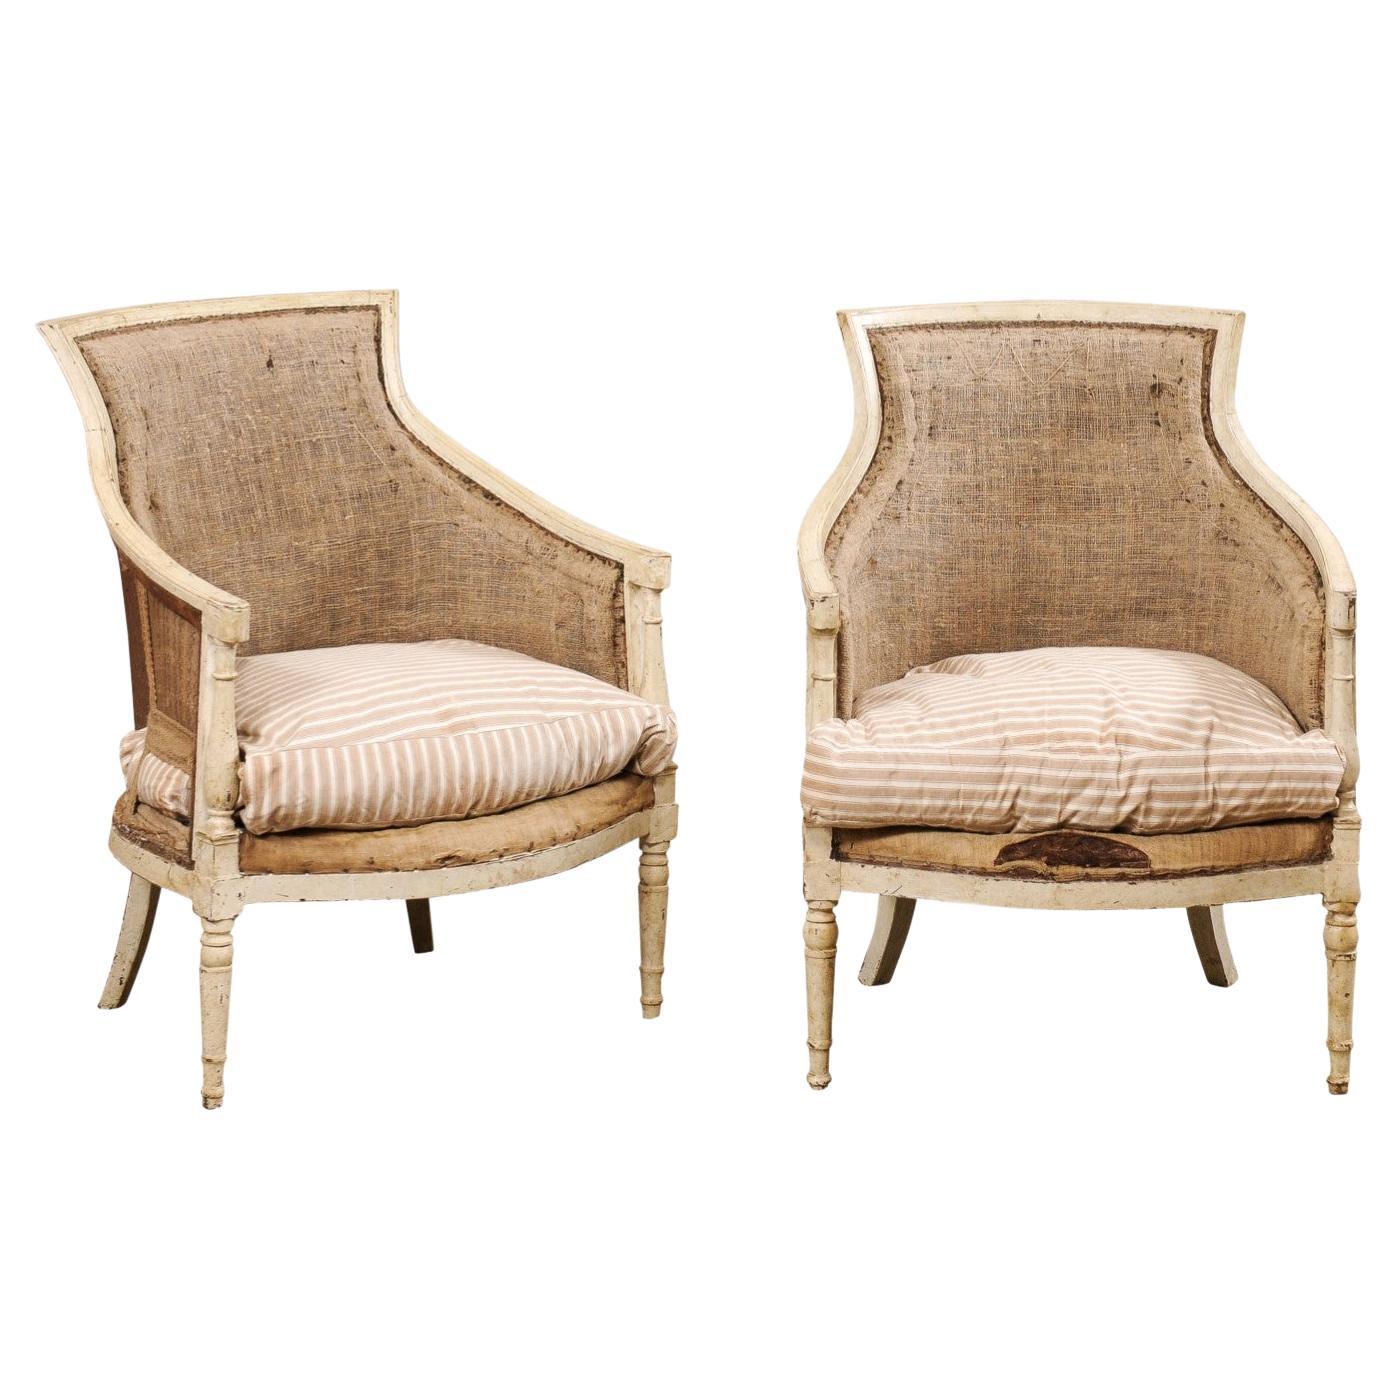 Neoklassisches französisches Paar Bergères-Sessel aus dem 19. Jh. (schön große Sitze!)